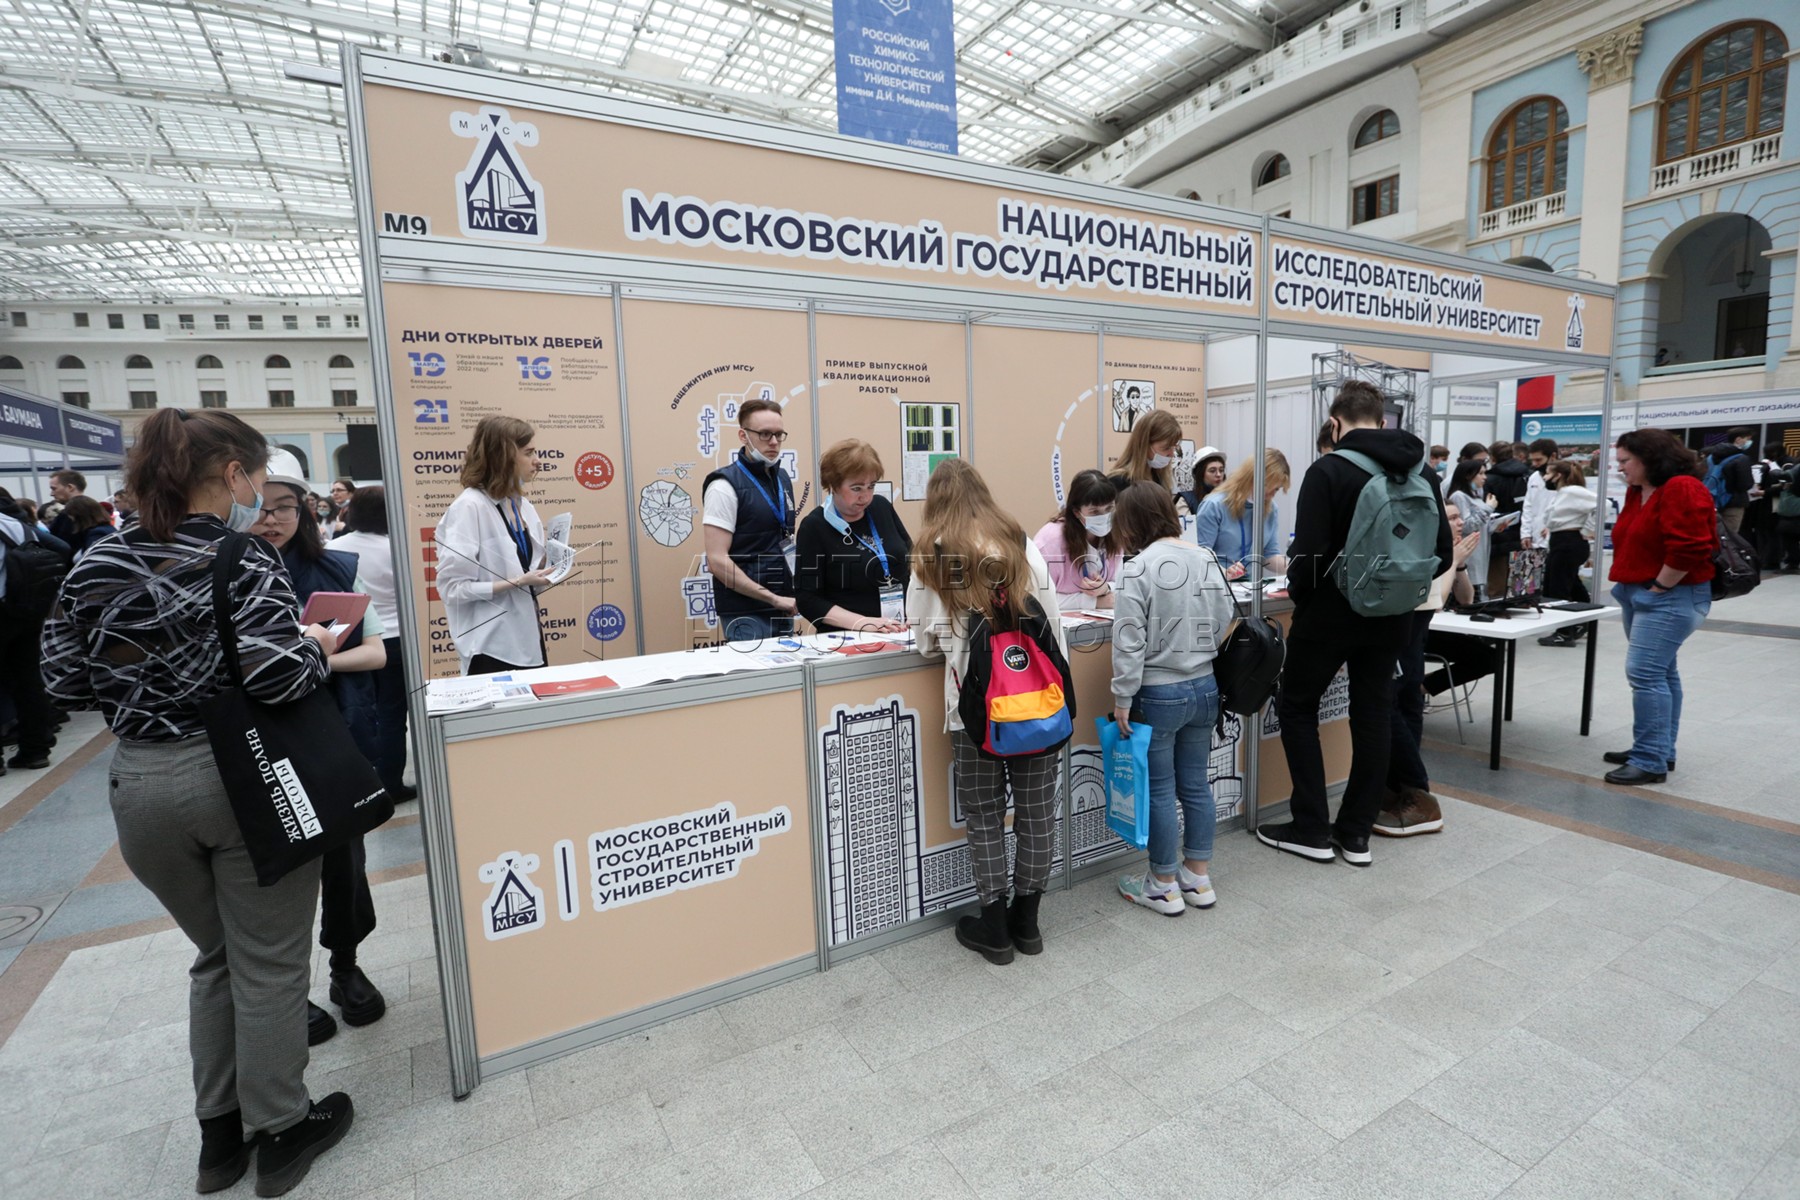 Московская международная выставка образования. Образование и карьера 2021 Москва Гостиный двор.